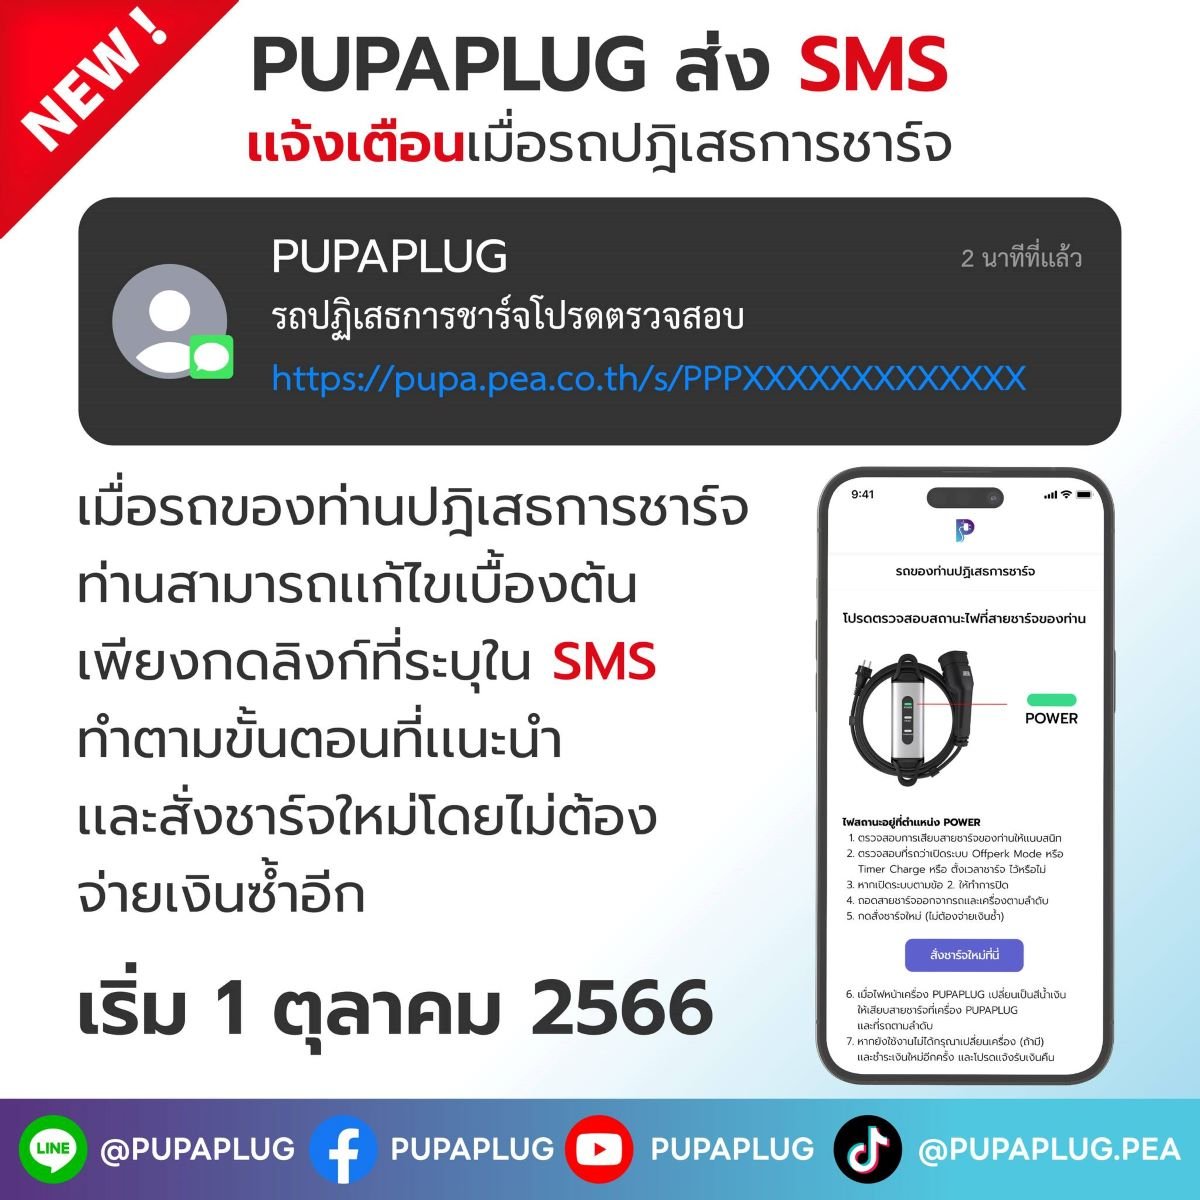 PUPAPLUG เปิดฟีเจอร์ใหม่ รถไม่ชาร์จใน 8 นาที ส่ง SMS เเจ้งเตือน